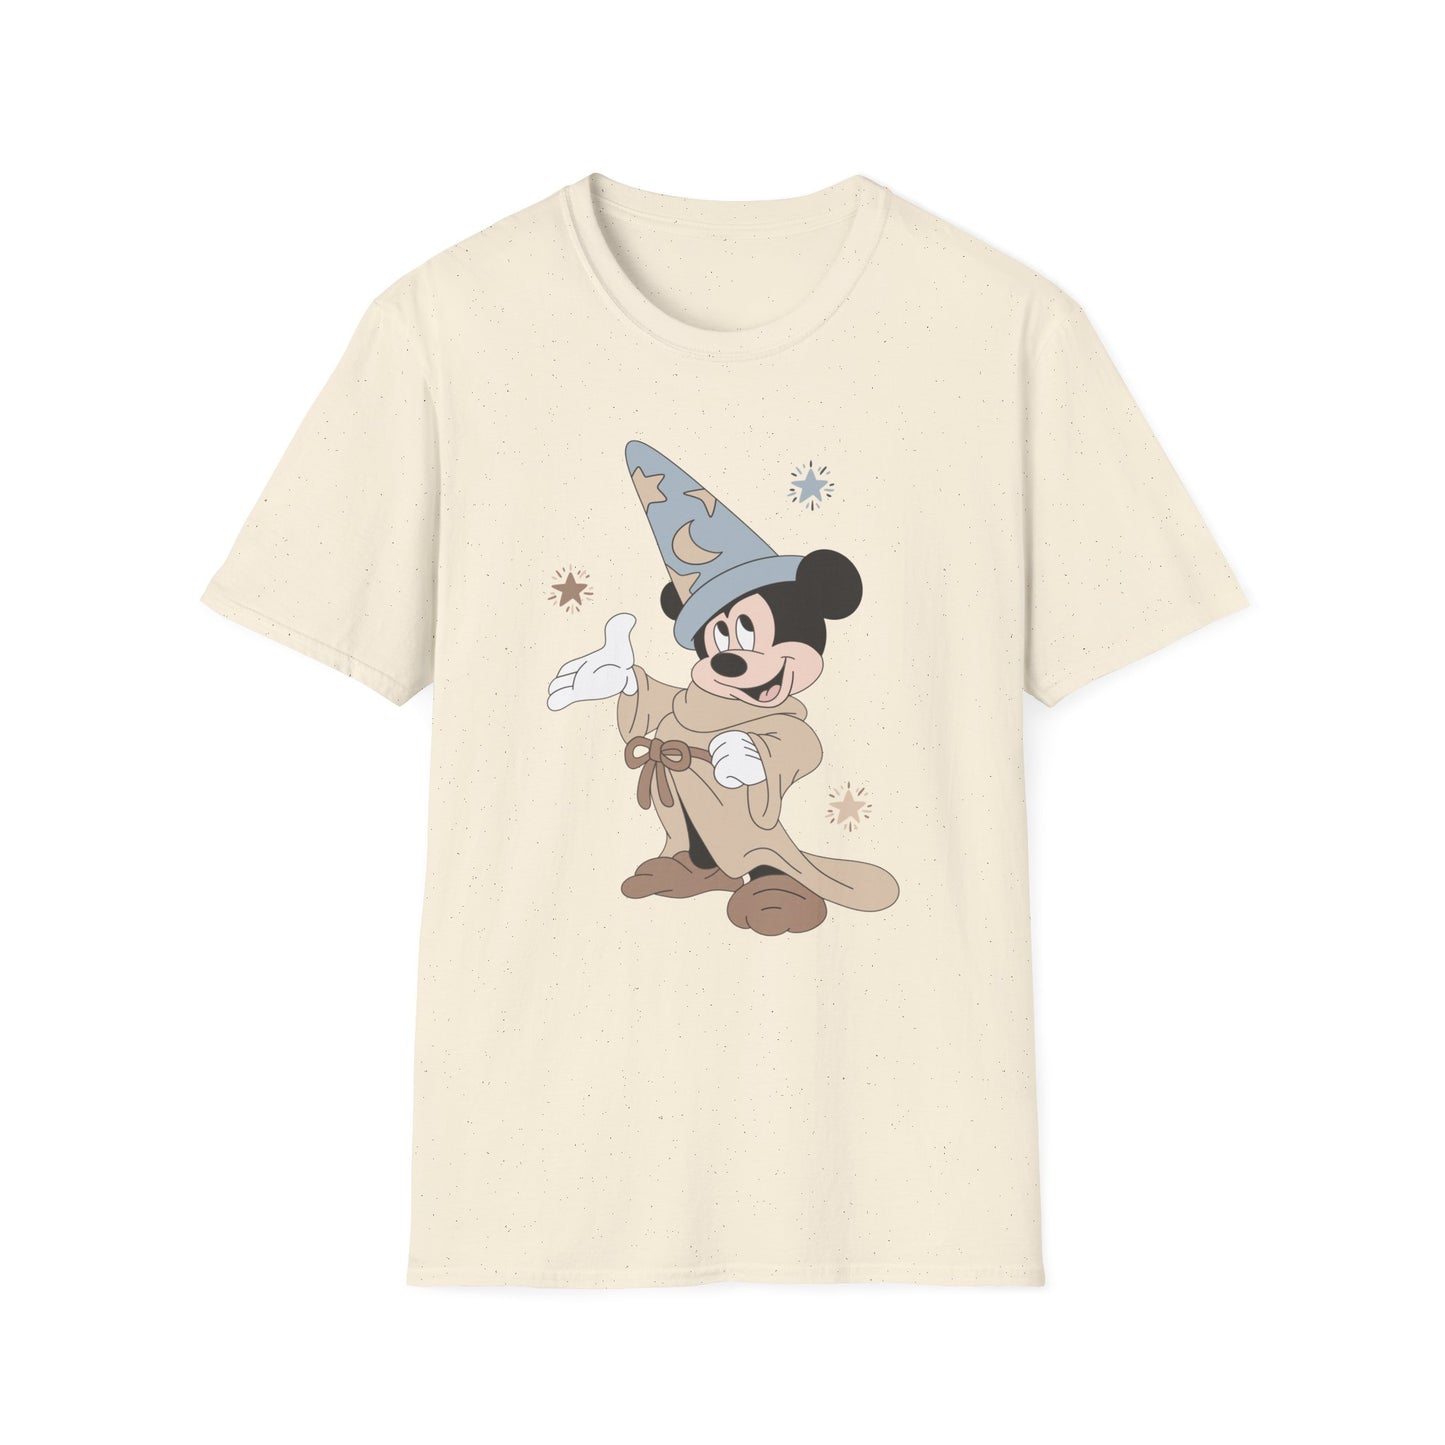 Mouse Sorcerer T-Shirt